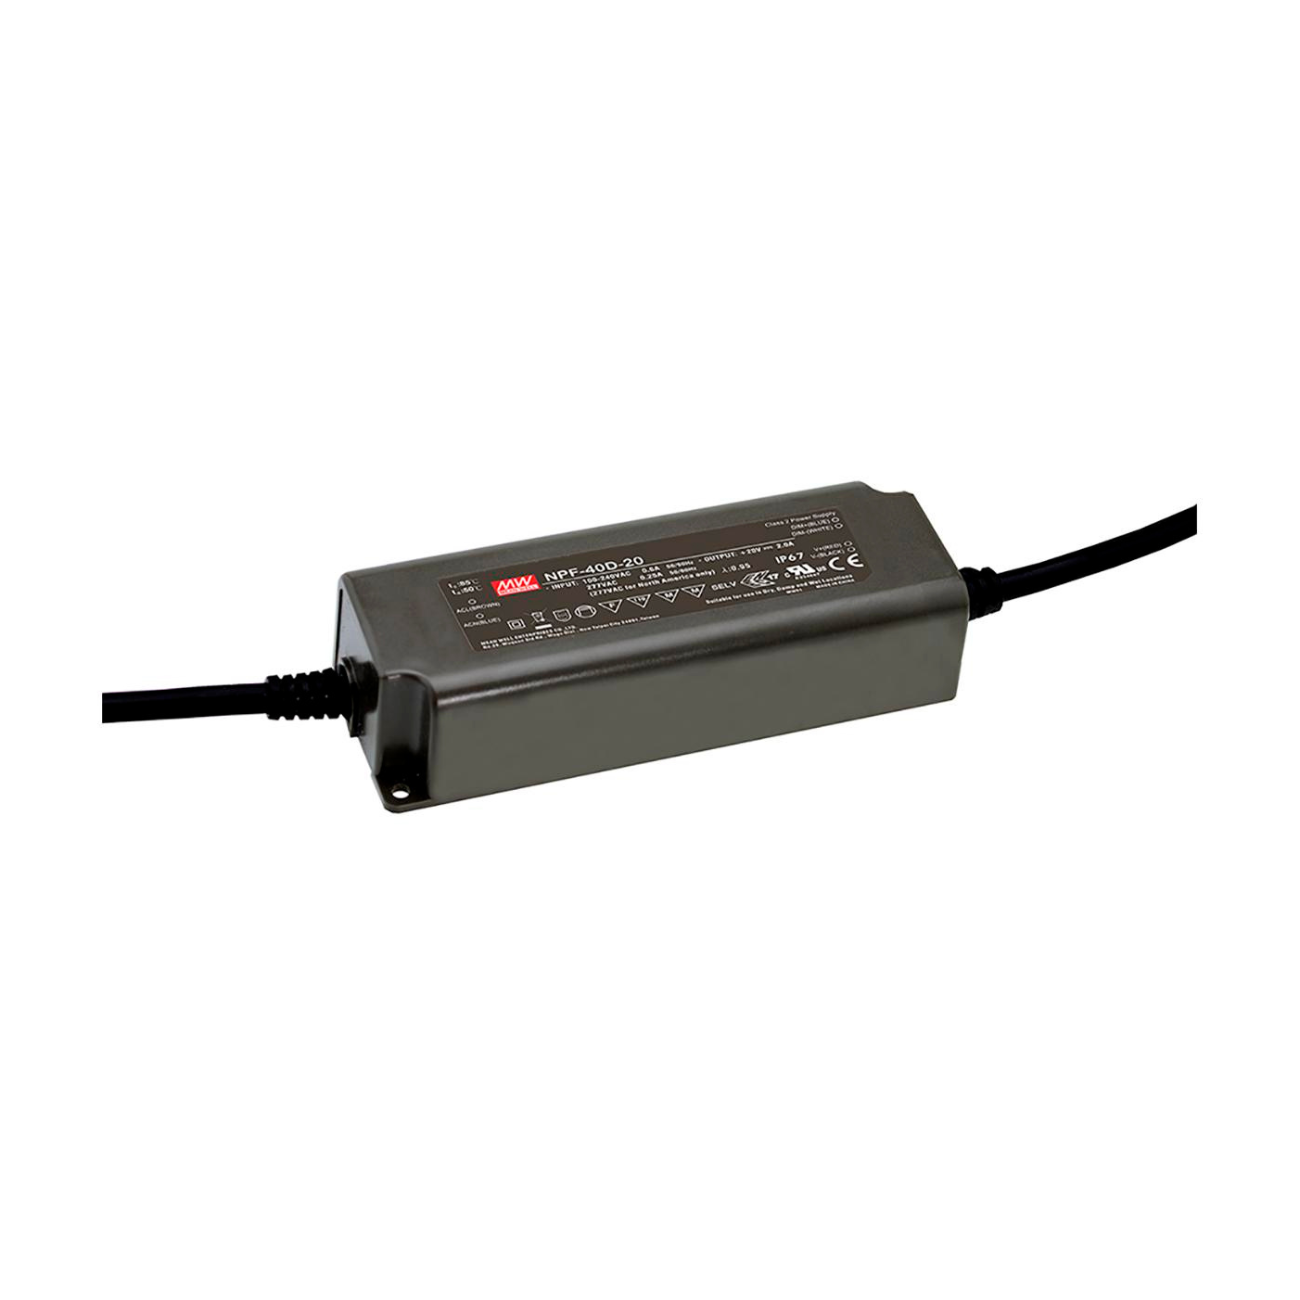 MeanWell NPF-40D-12 (40W/12V) dimmbarer LED-Trafo mit Schutzart IP67